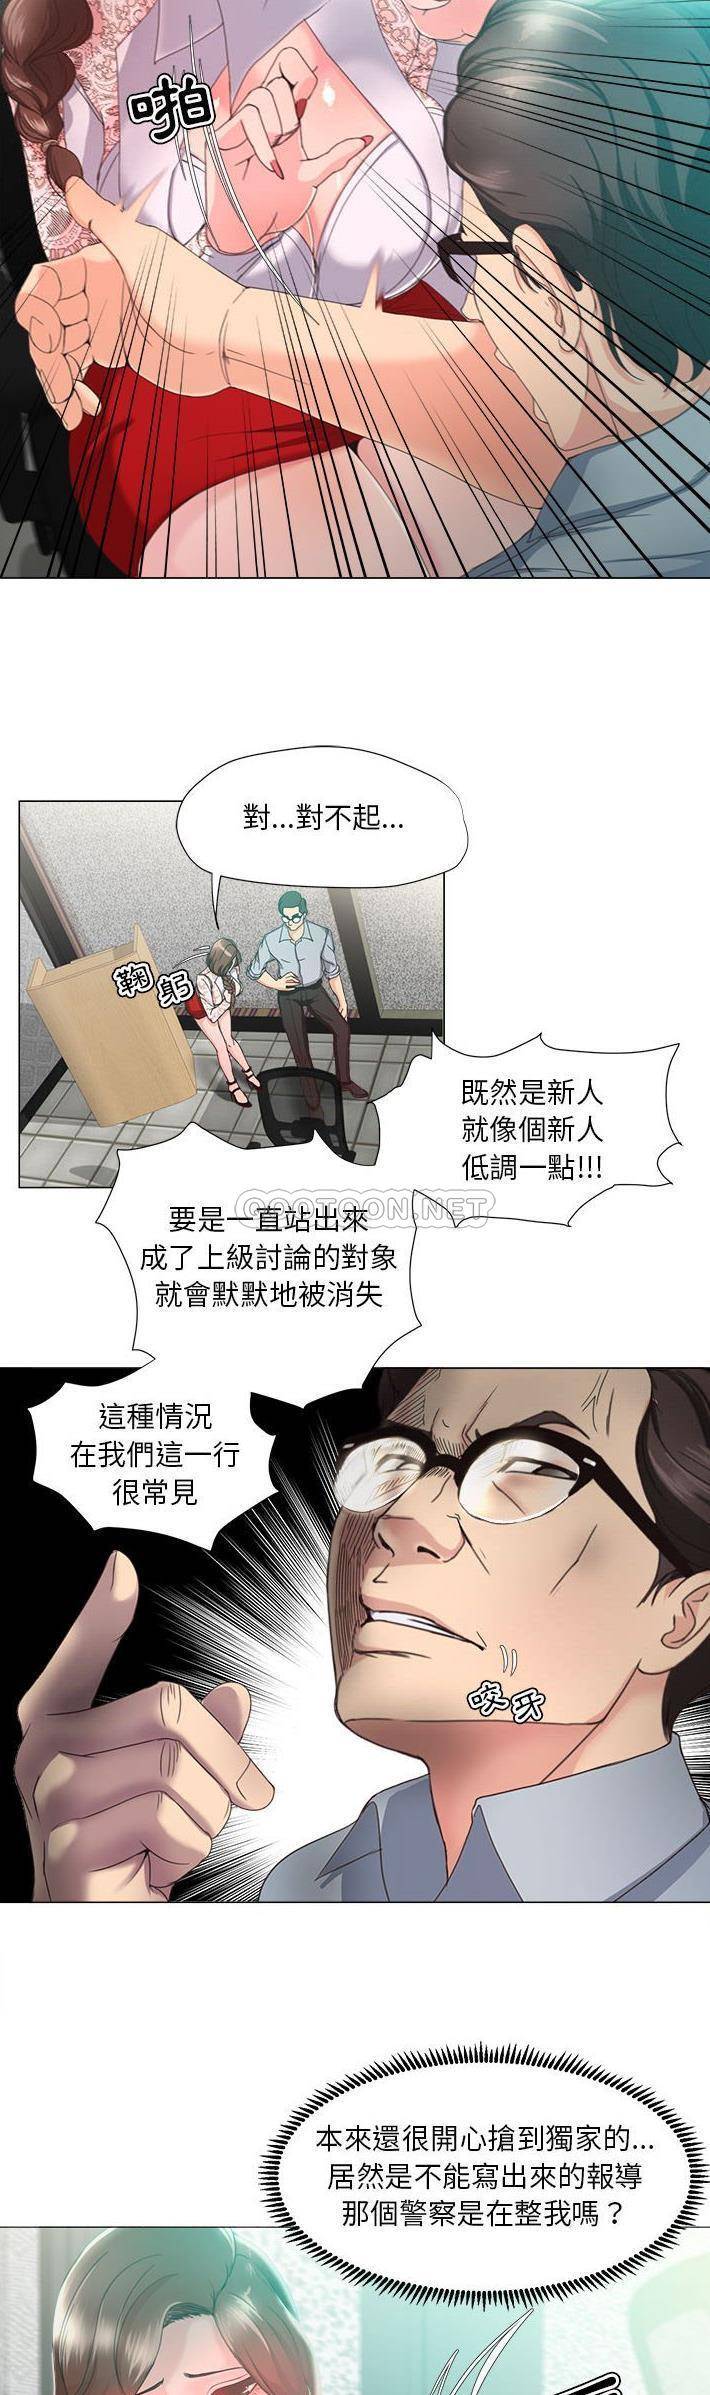 韩国污漫画 女人專門為難女人(女人的戰爭) 第14话 9